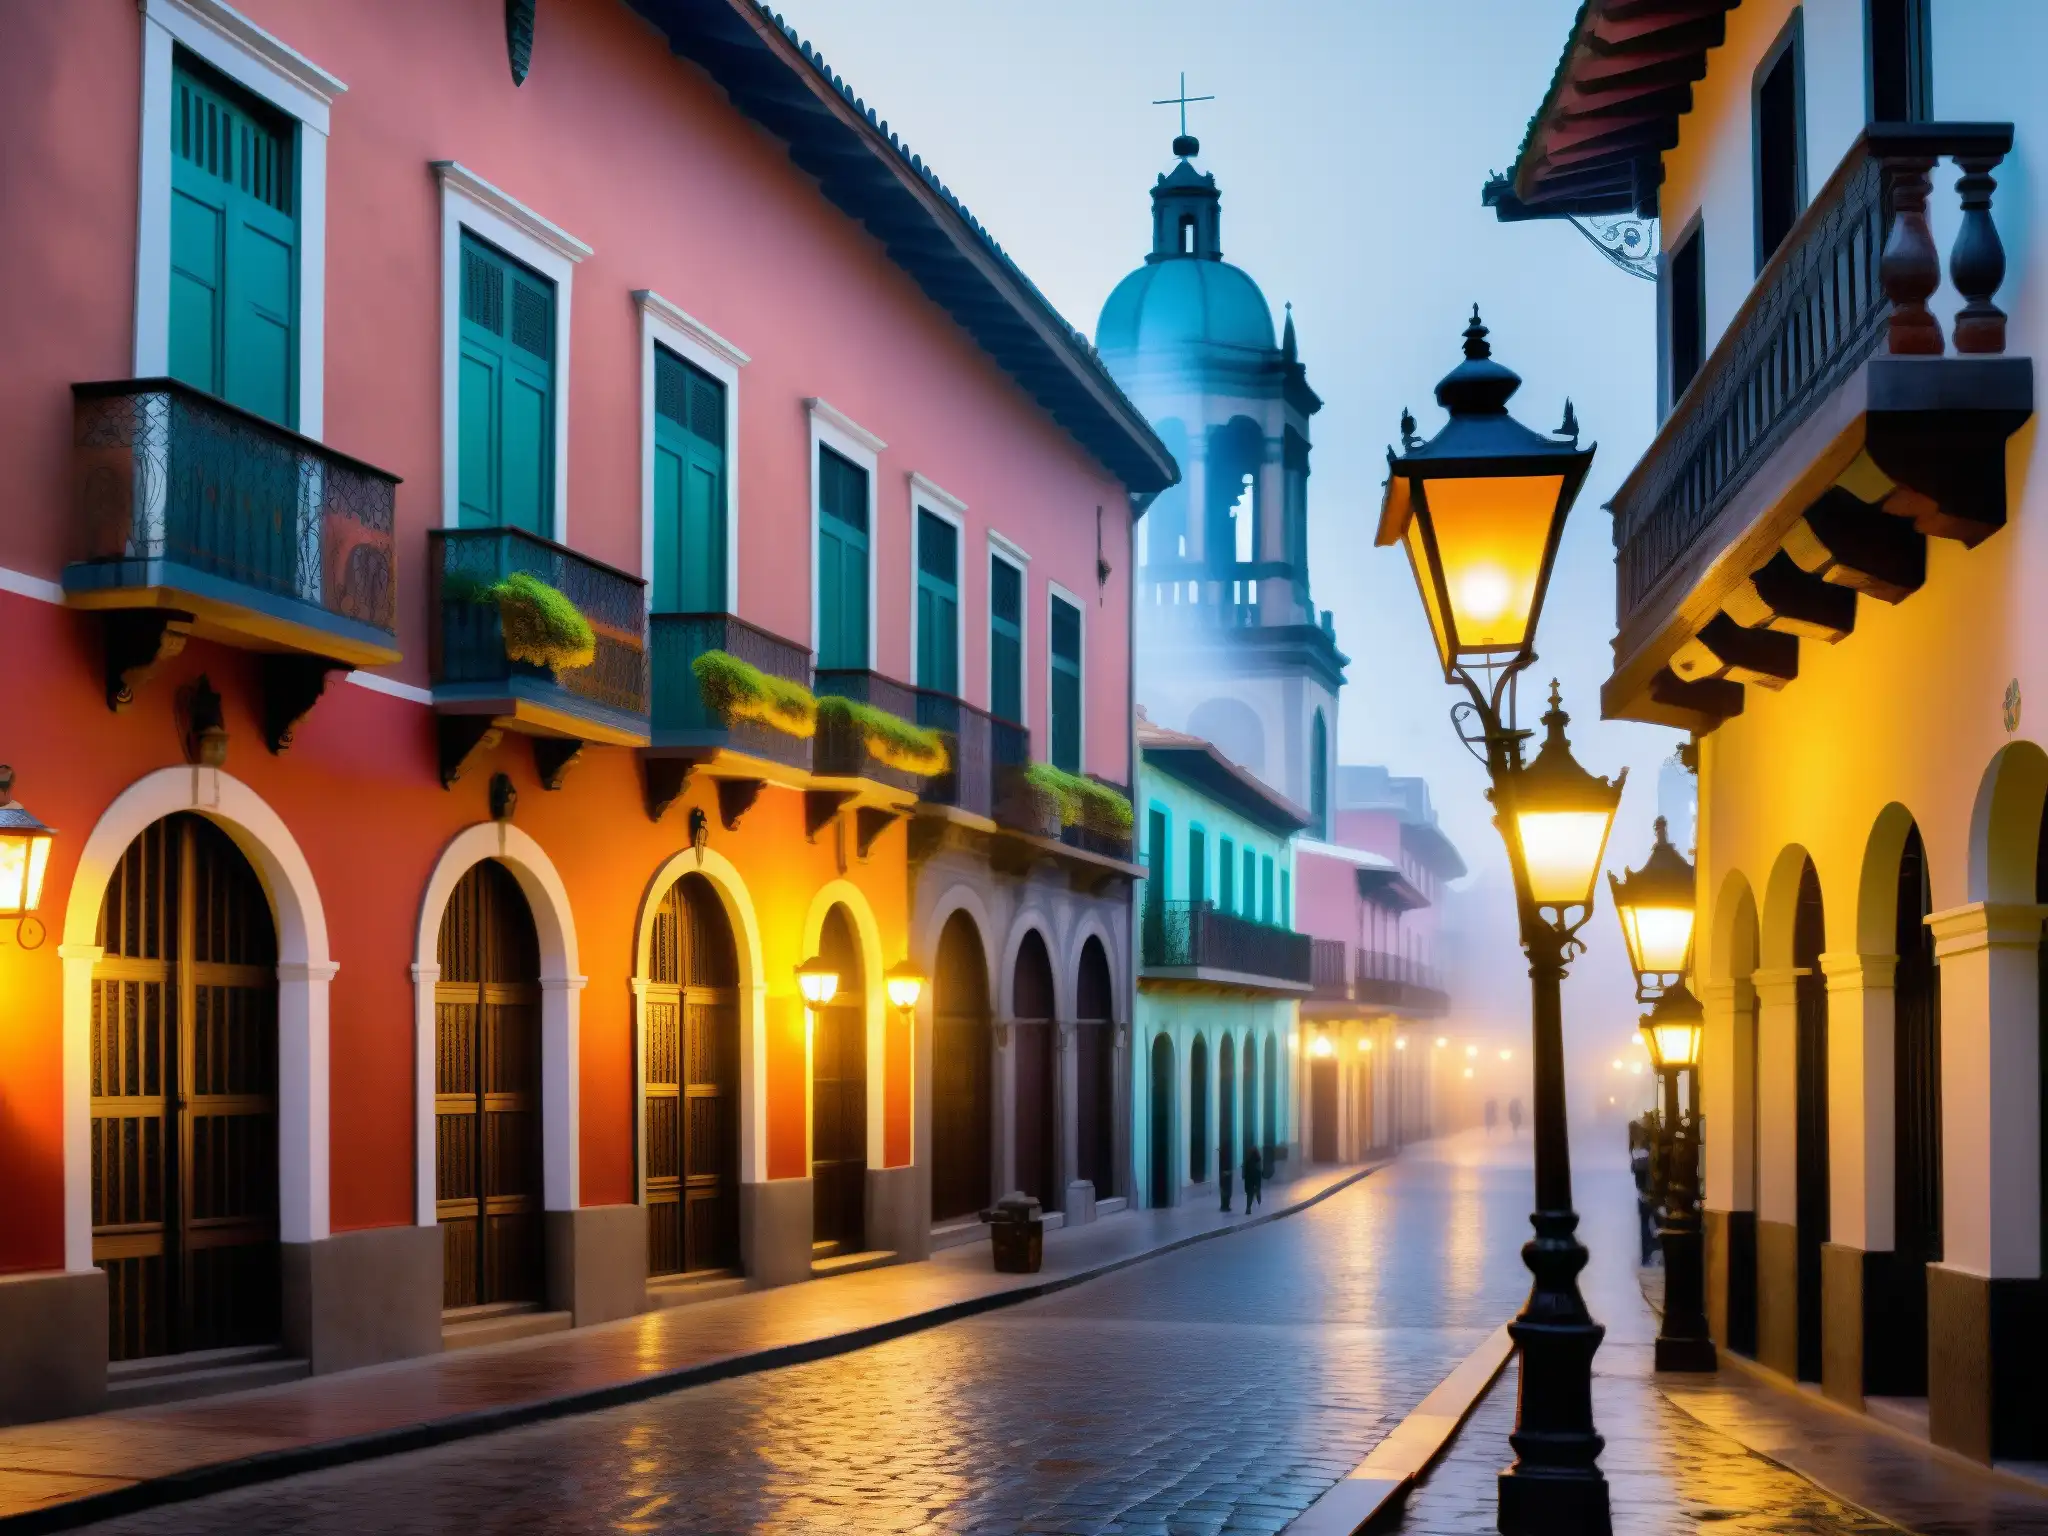 Tesoro Marquesa Ciudad México leyenda: Calle neblinosa de la Ciudad de México, edificios coloniales y murales vibrantes